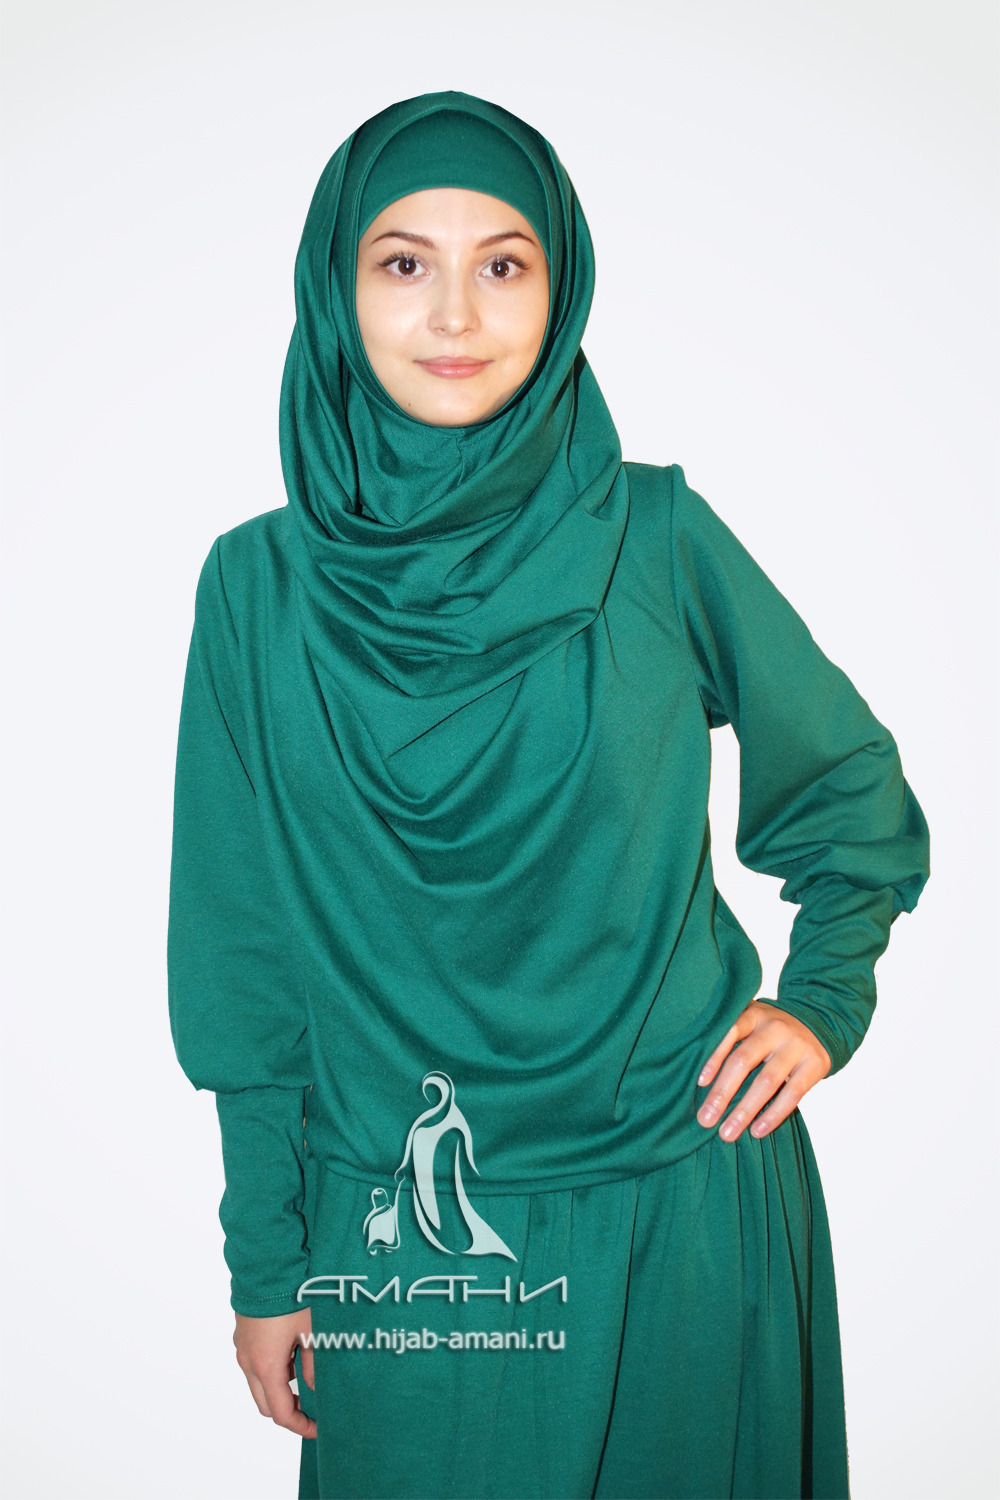 Продажа мусульманских. Мусульманские вещи. Зеленый хиджаб. Салатовый хиджаб. Вещи для мусульманок.